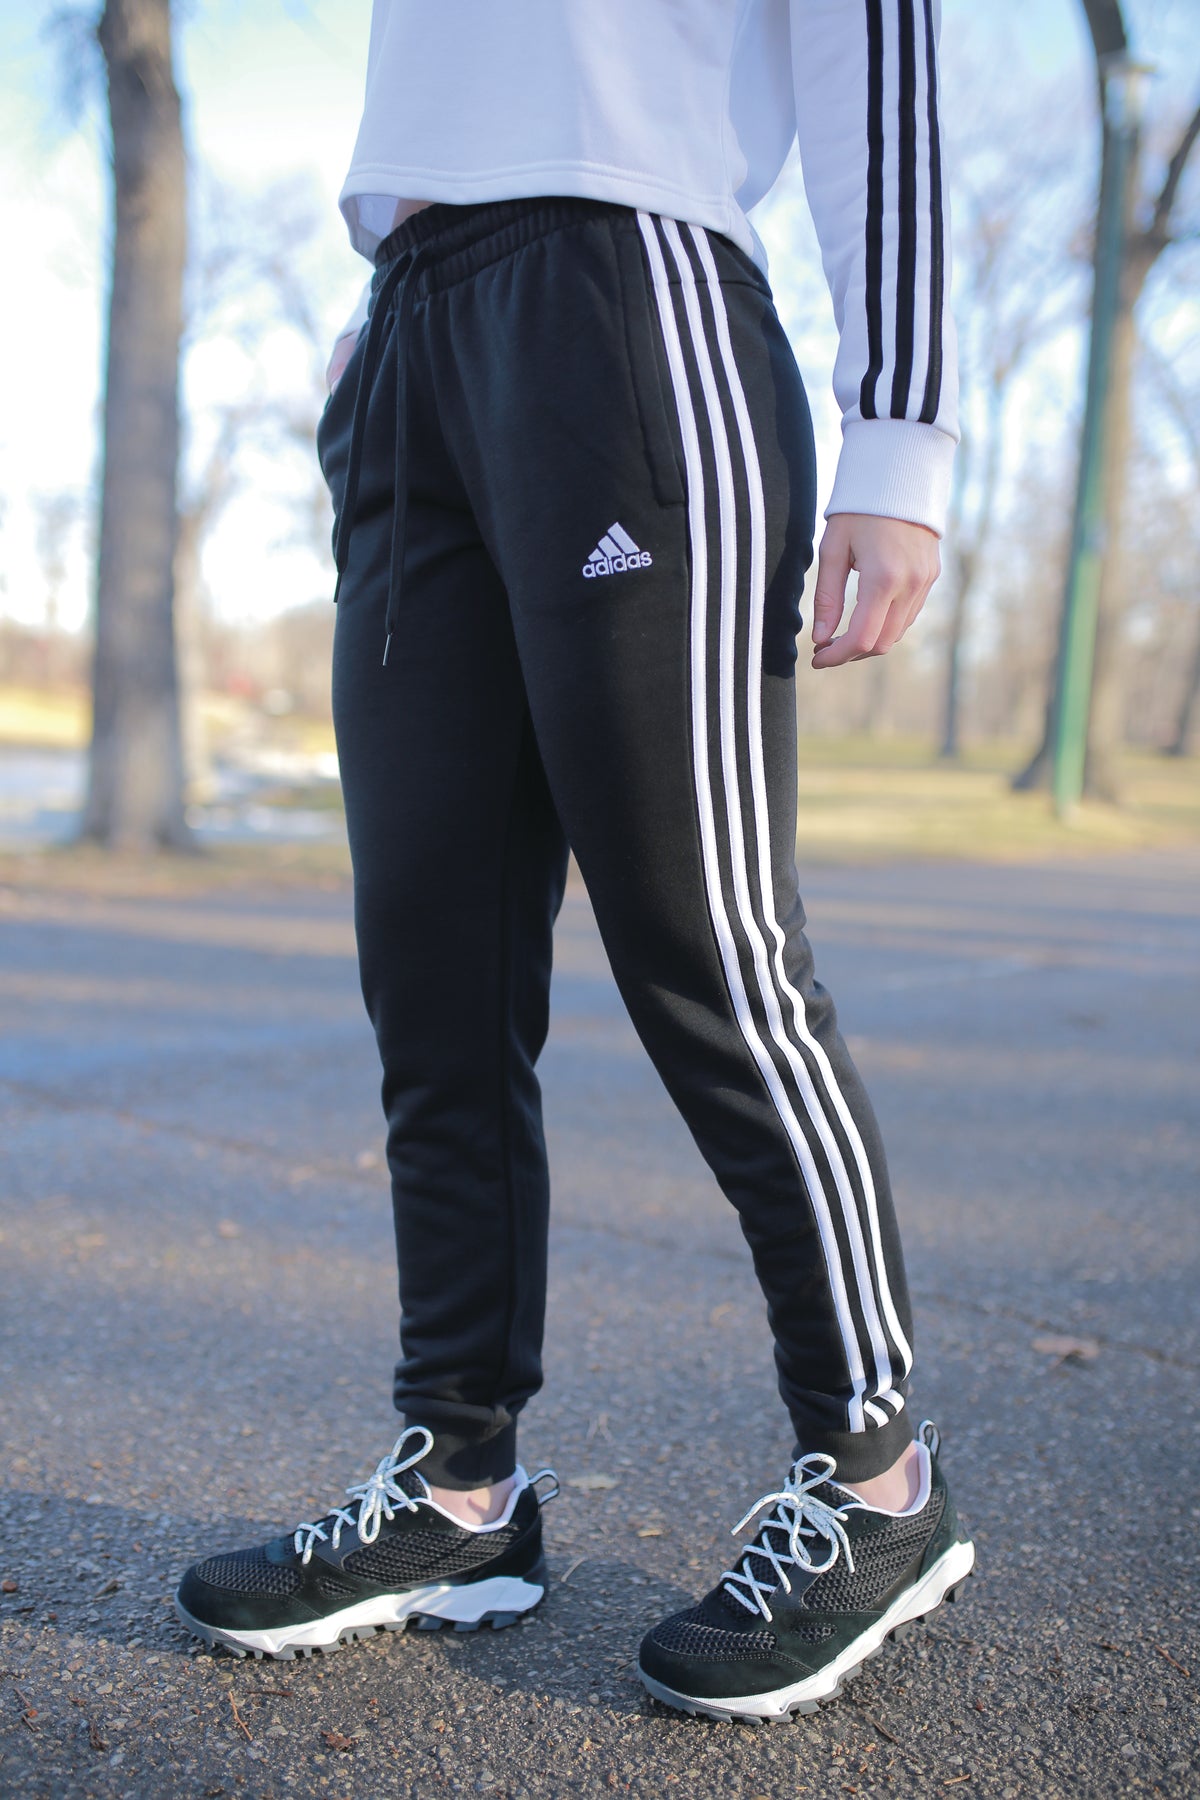 Adidas Women Ladies Essential 3 Stripes Black & White Track Pants M Medium  NWT